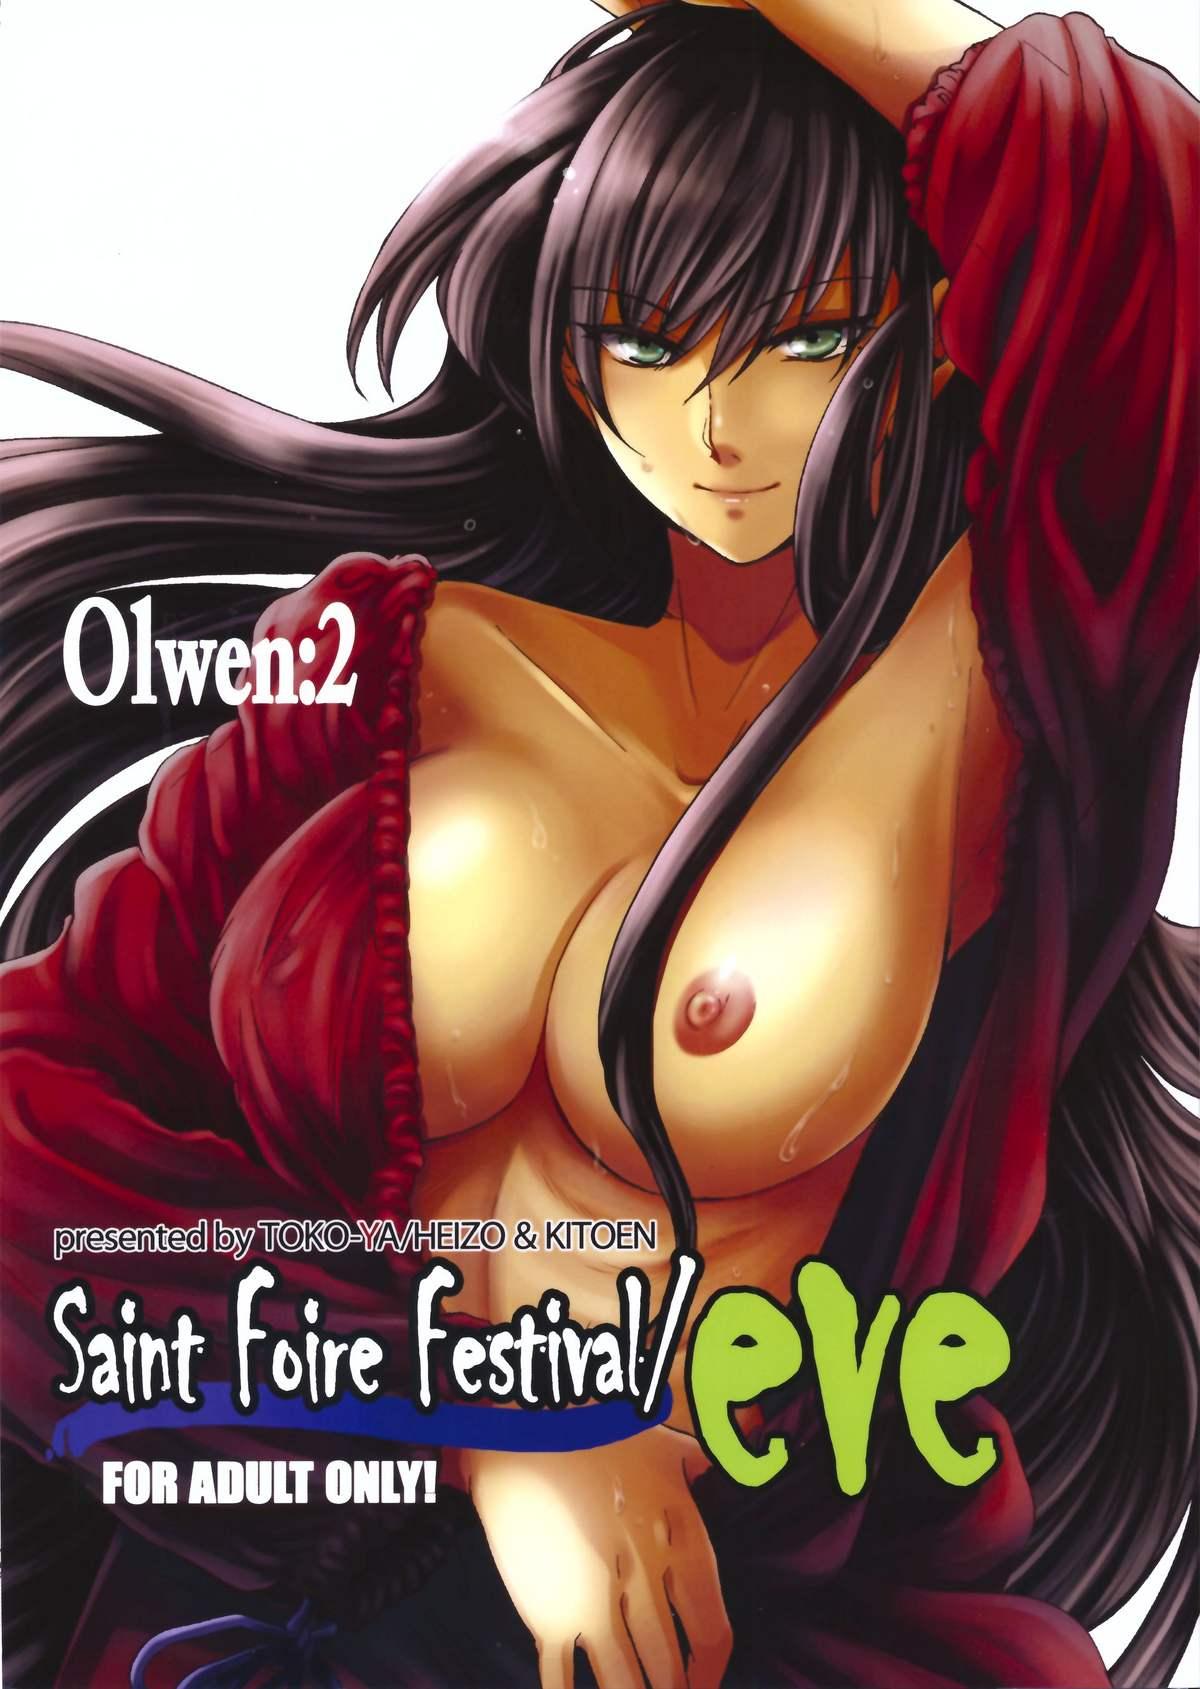 Saint Foire Festival/eve Olwen:2 0